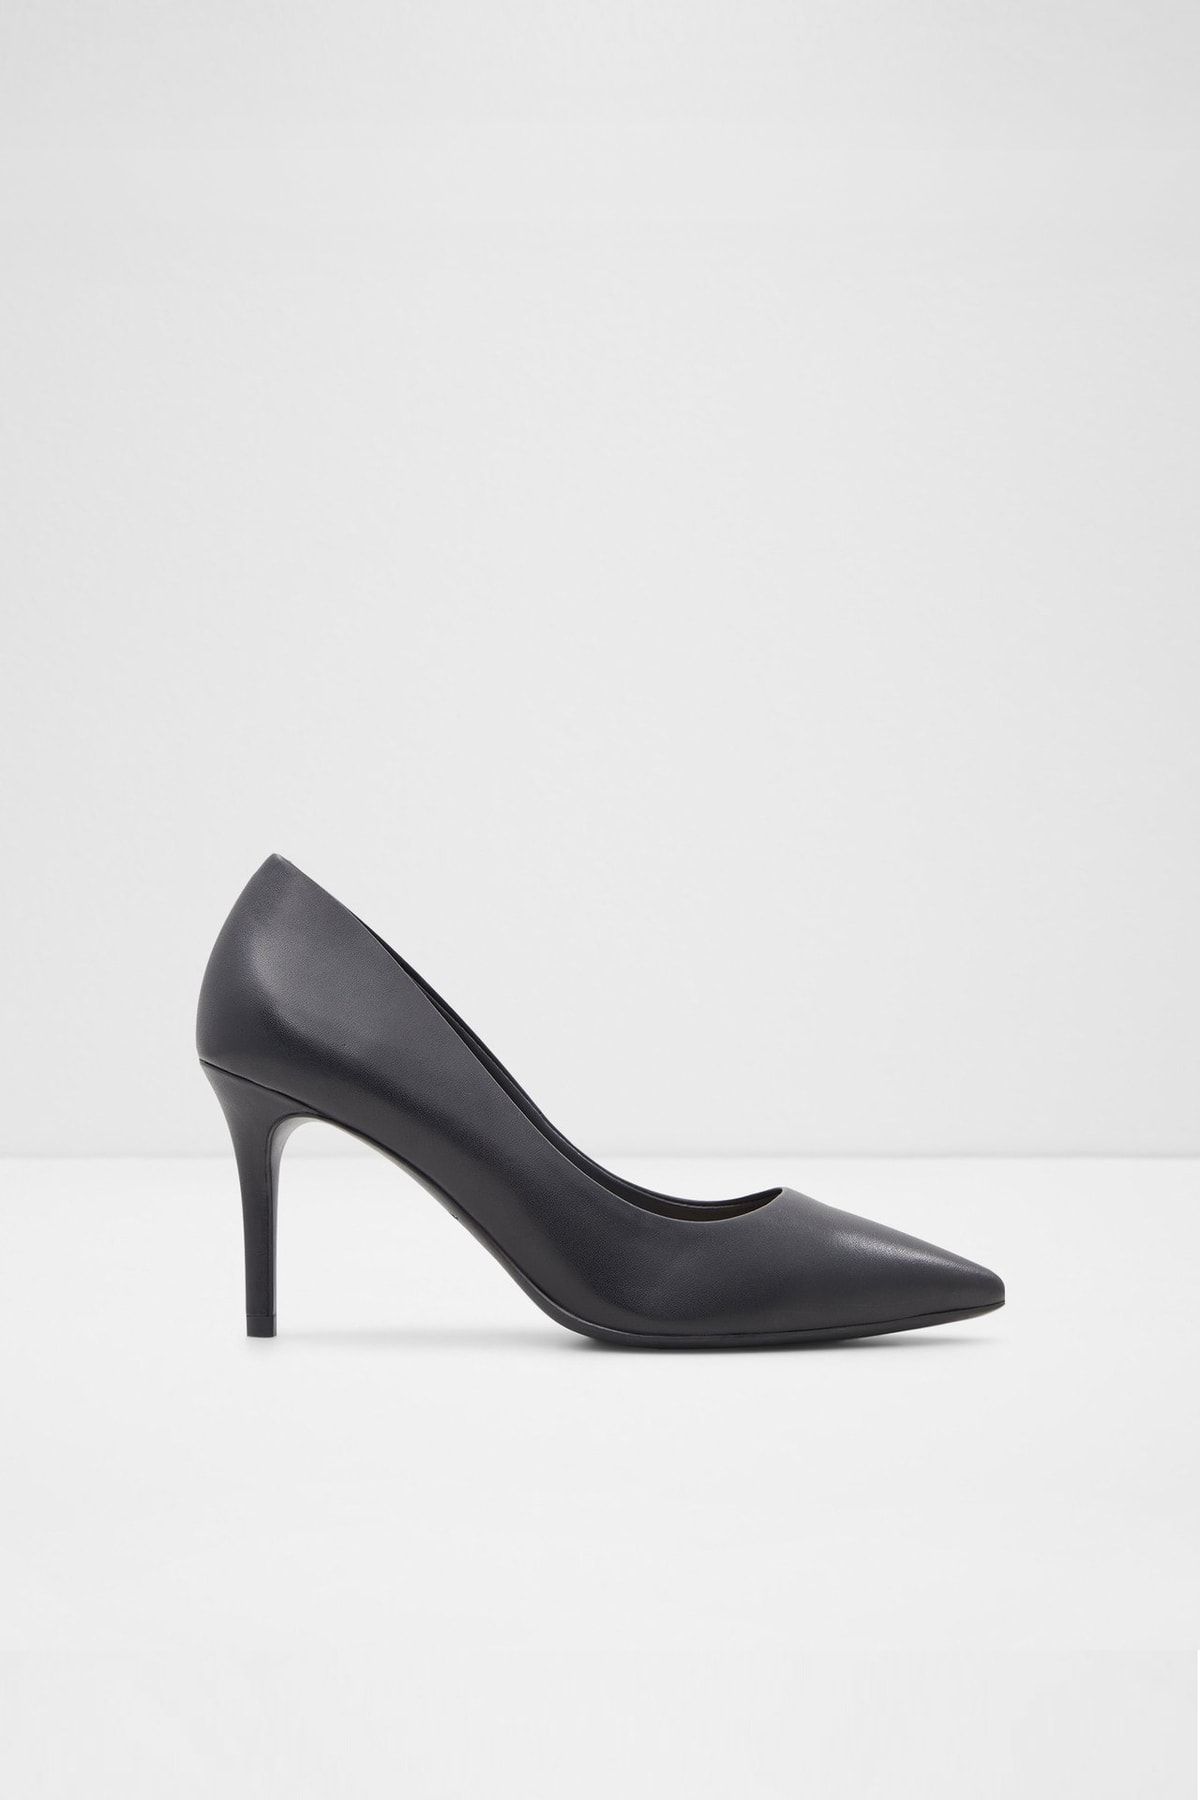 Aldo Serenıtı - Siyah Kadın Topuklu Ayakkabı